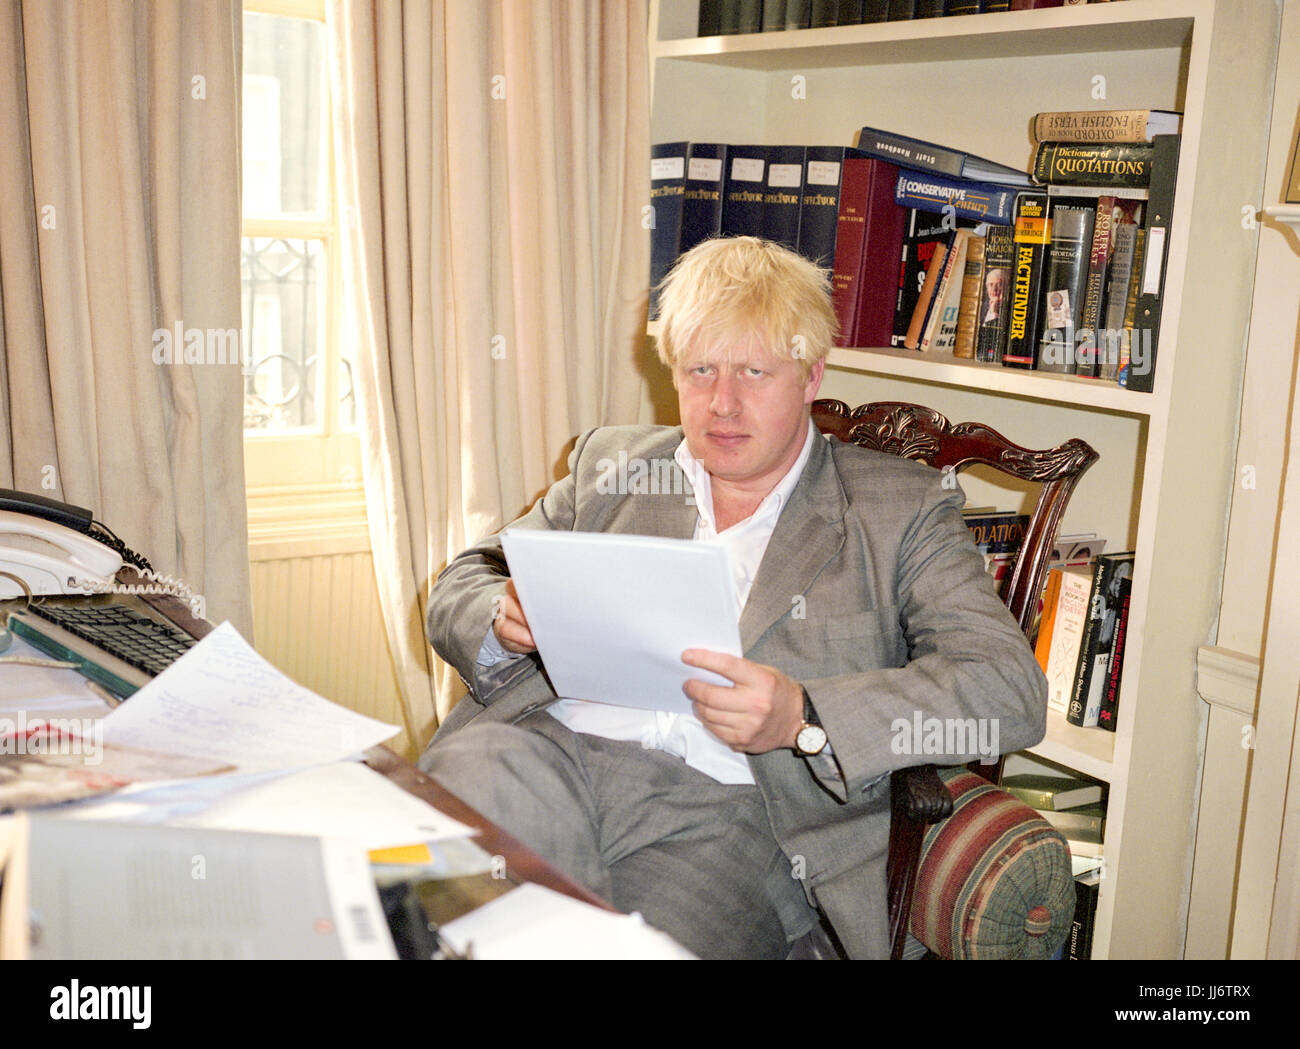 Boris Johnson primo Ministro conservatore, redattore della rivista Spectator fotografato nell'ufficio della rivista Spectator nel 2003, Westminster, Londra, Inghilterra. Foto Stock